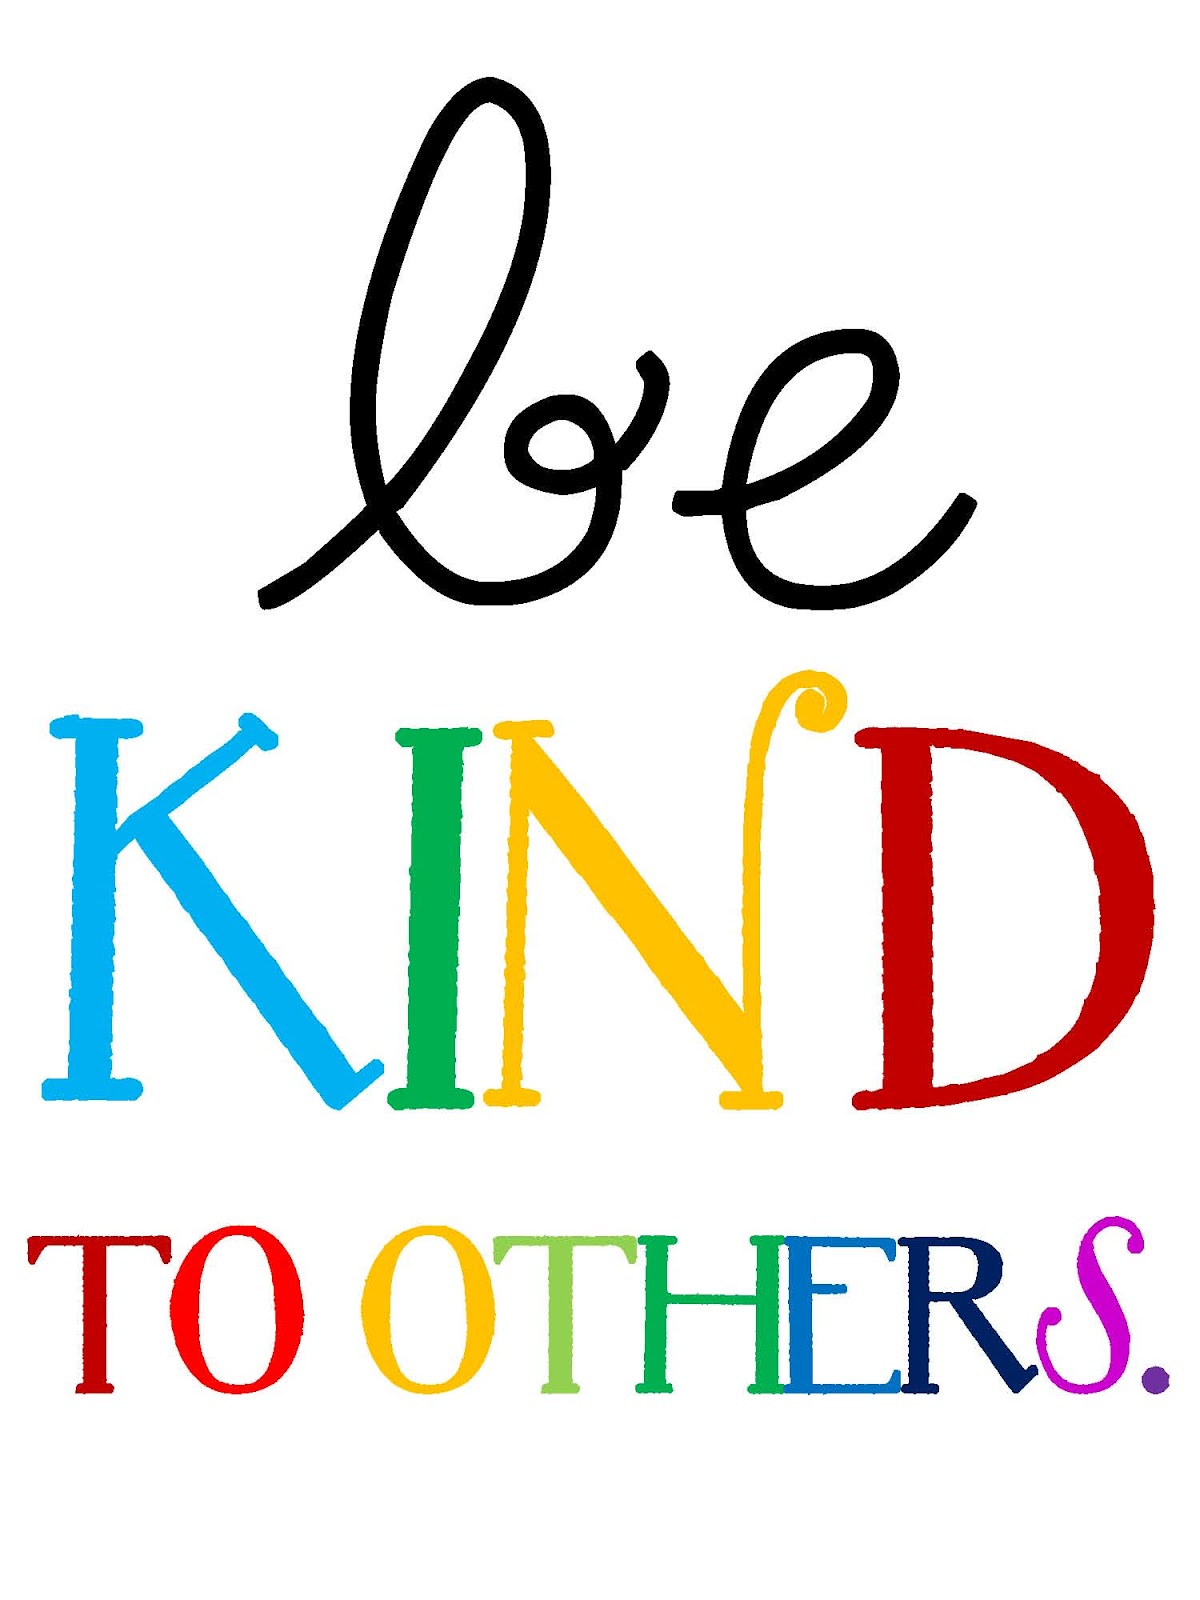 kindness clipart kindness week